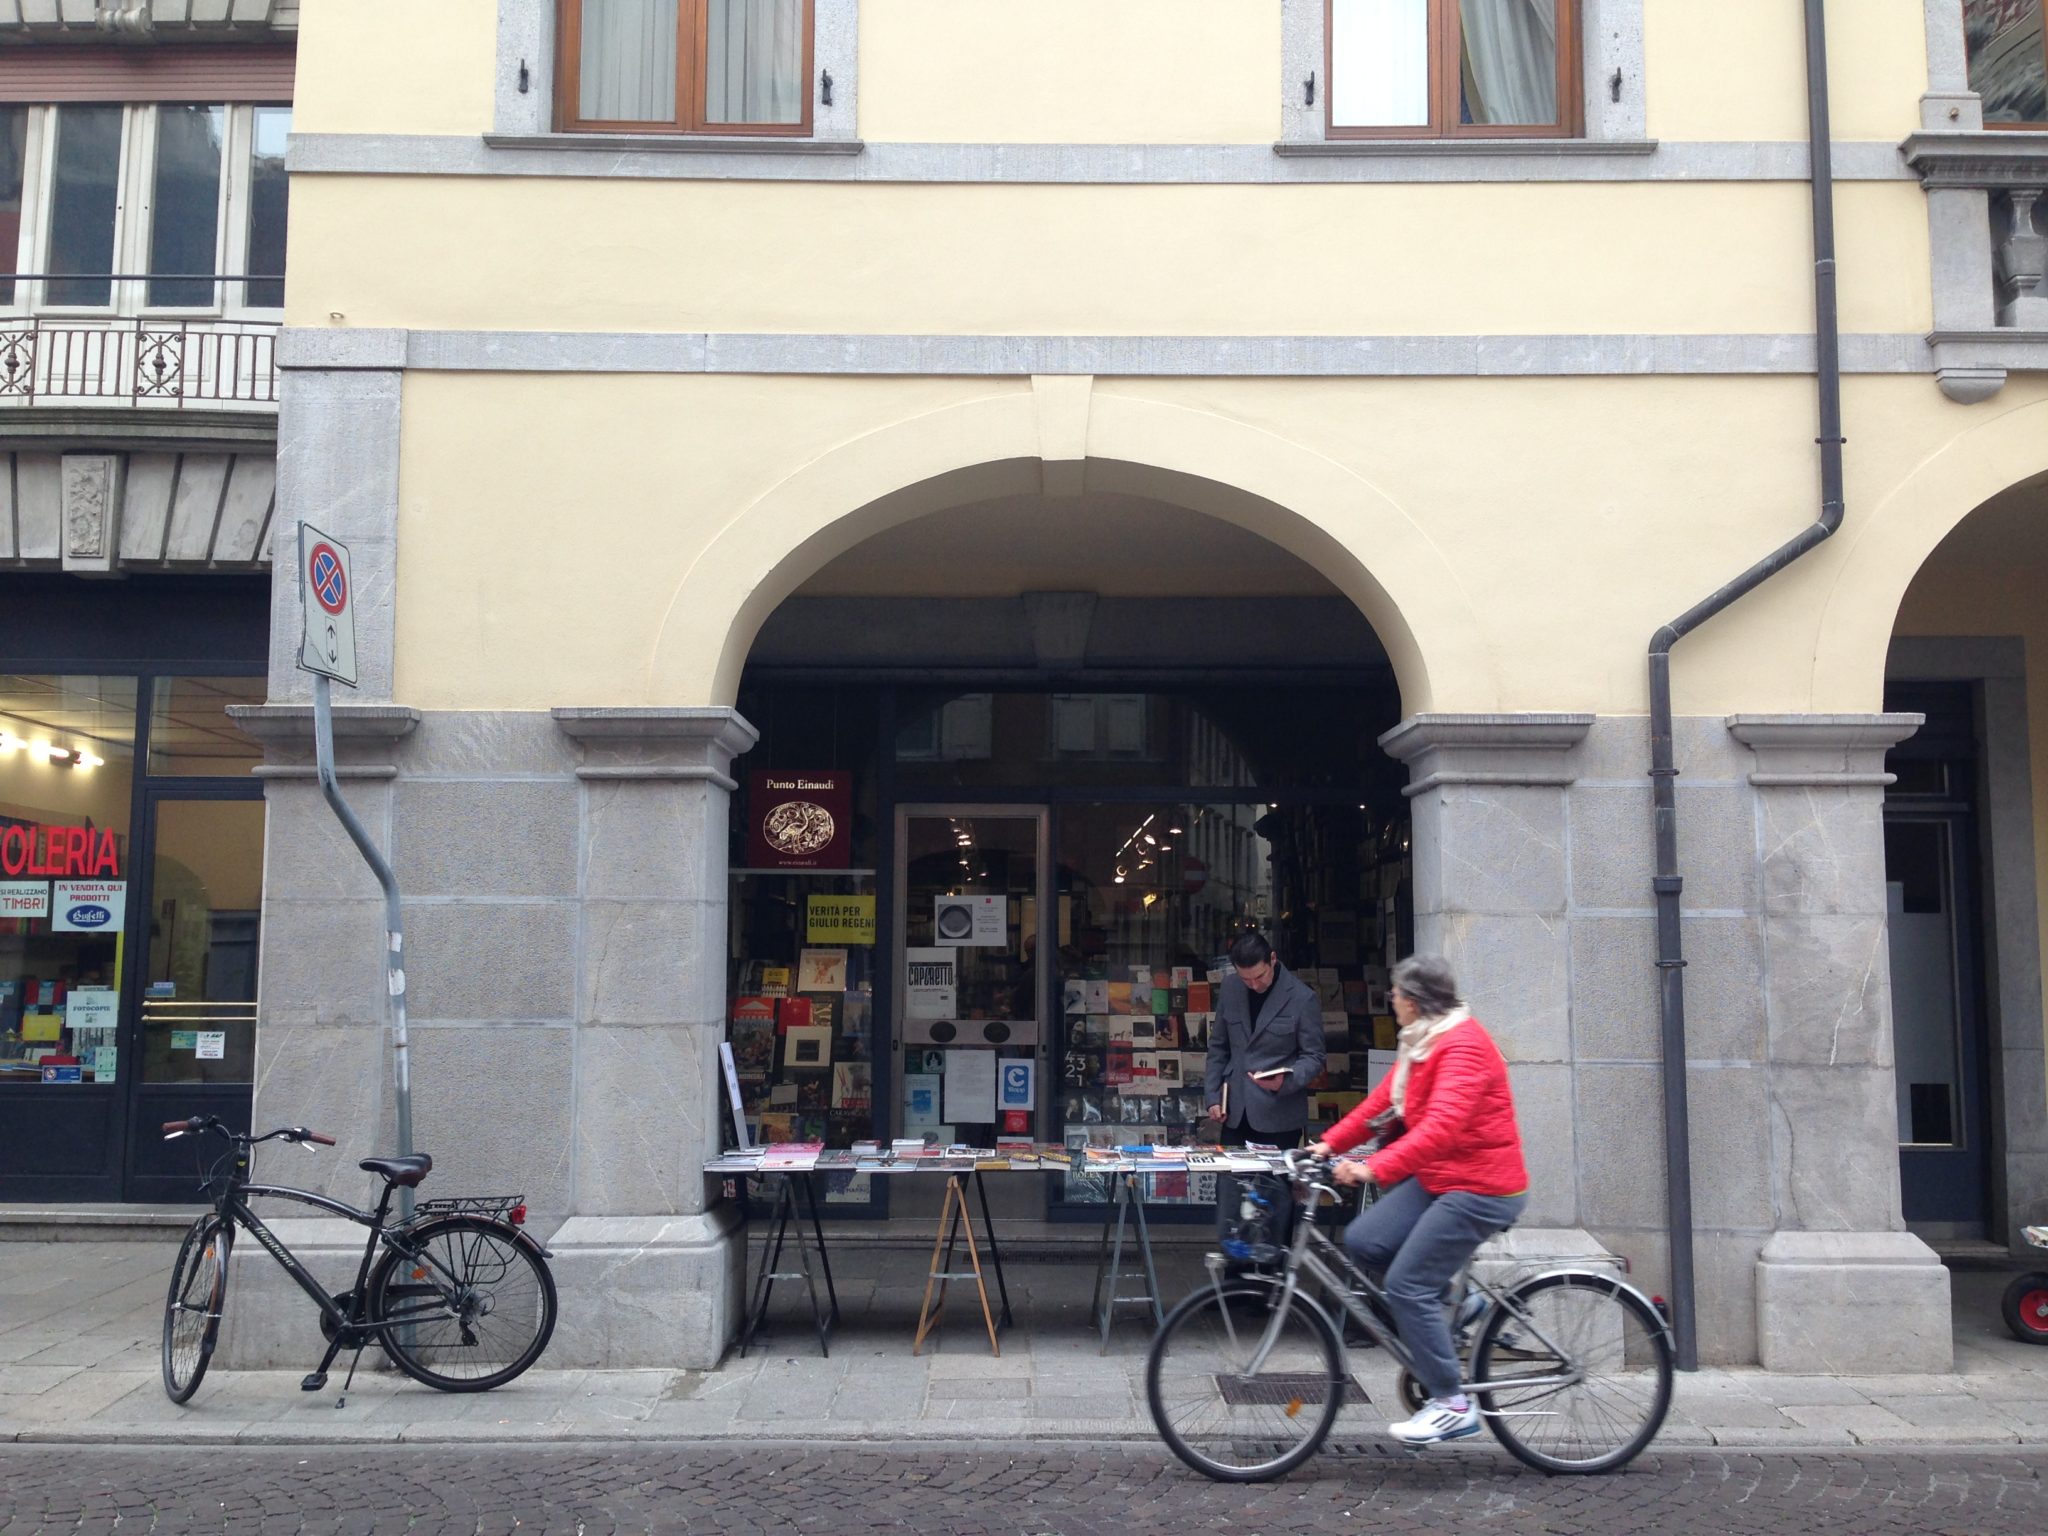 Librerie, piazze storiche e pasticcerie passate alla storia di Udine da un punto di vista speciale: la sella e le due ruote di una bici